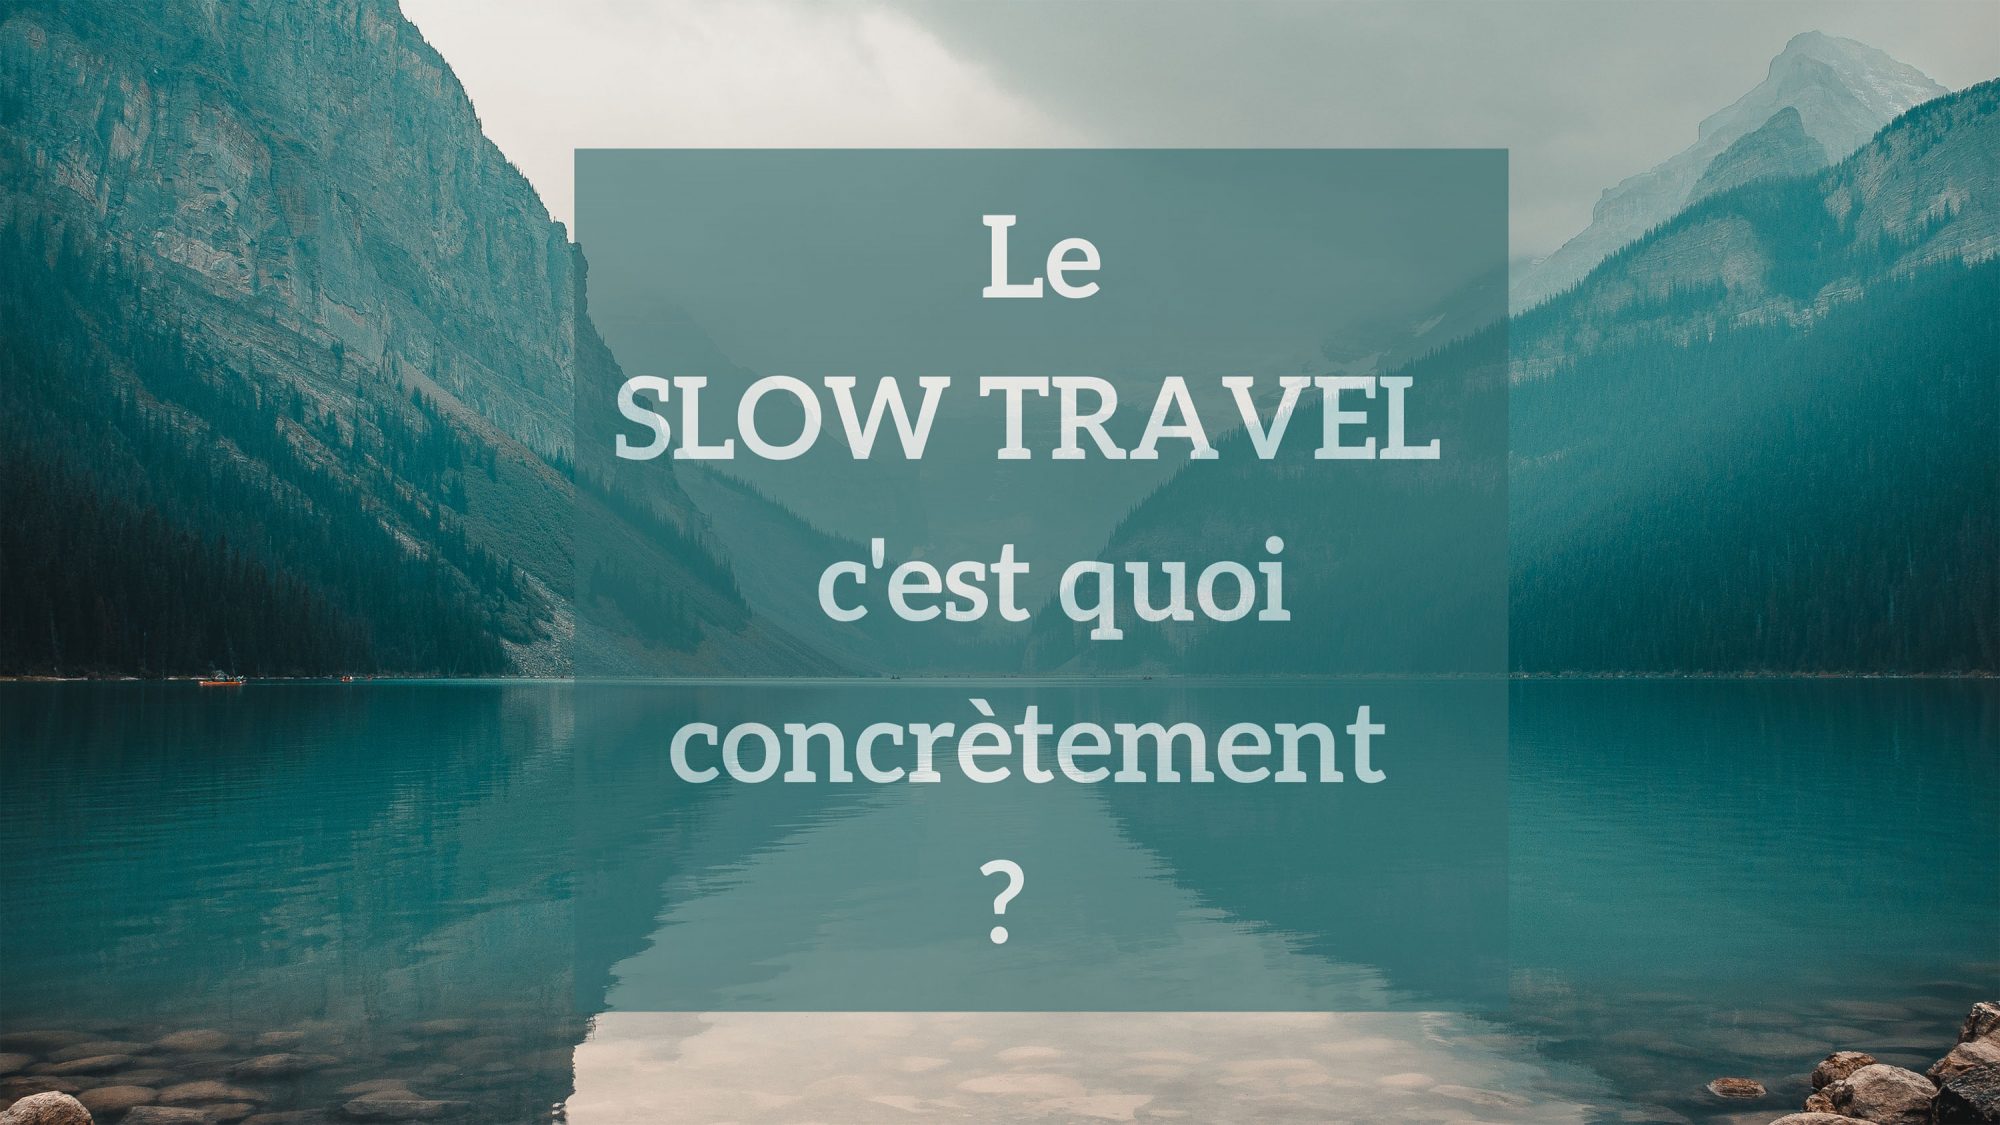 Le slow travel ou slow tourisme c'est quoi concrètement ?